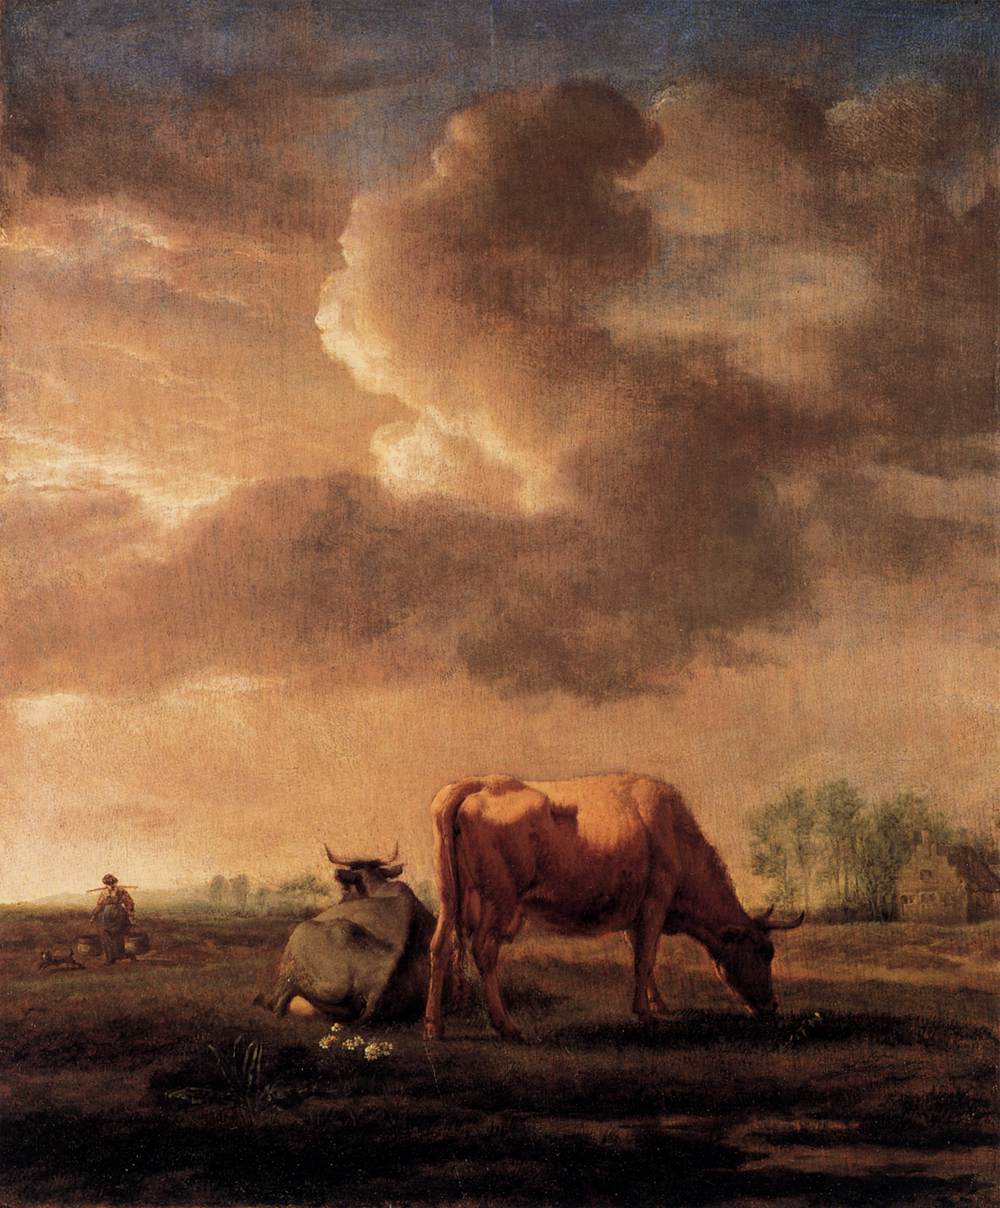 Krowy na łące